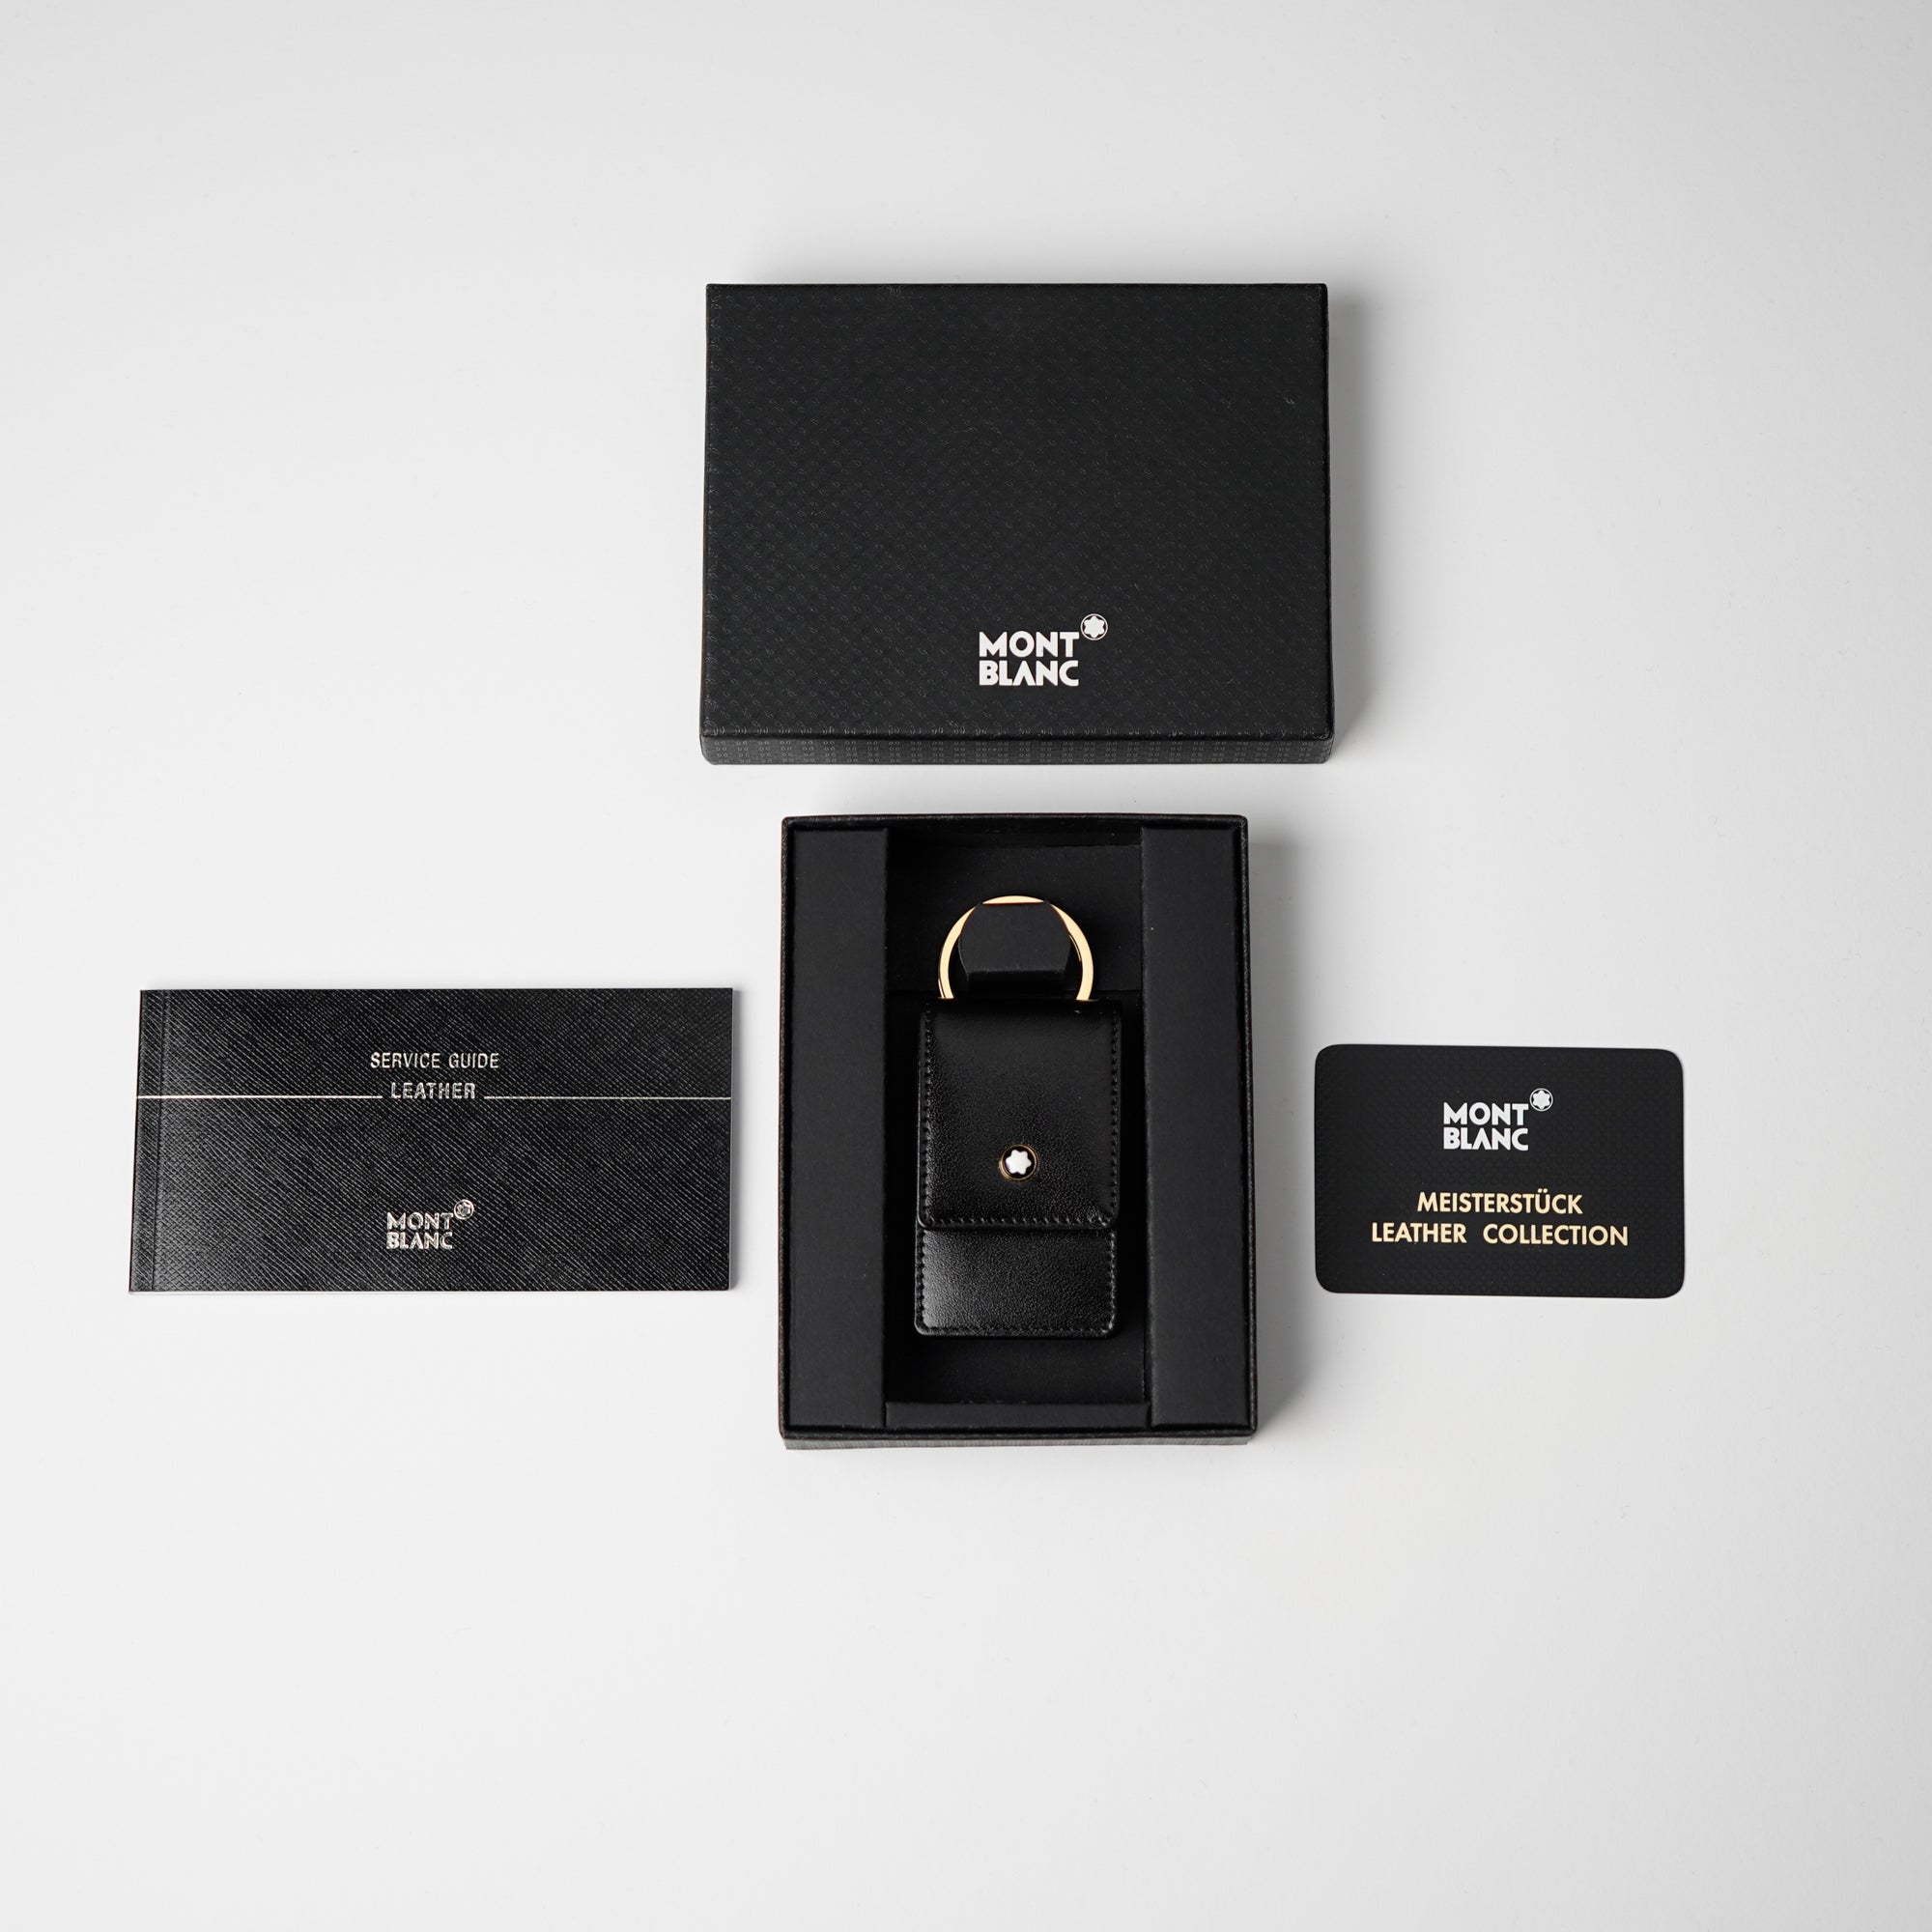 Produktfotografie des Mont Blanc Schlüsseletui in einem tief glänzendem schwarzen Leder zusammen mit dem Lieferumfang 